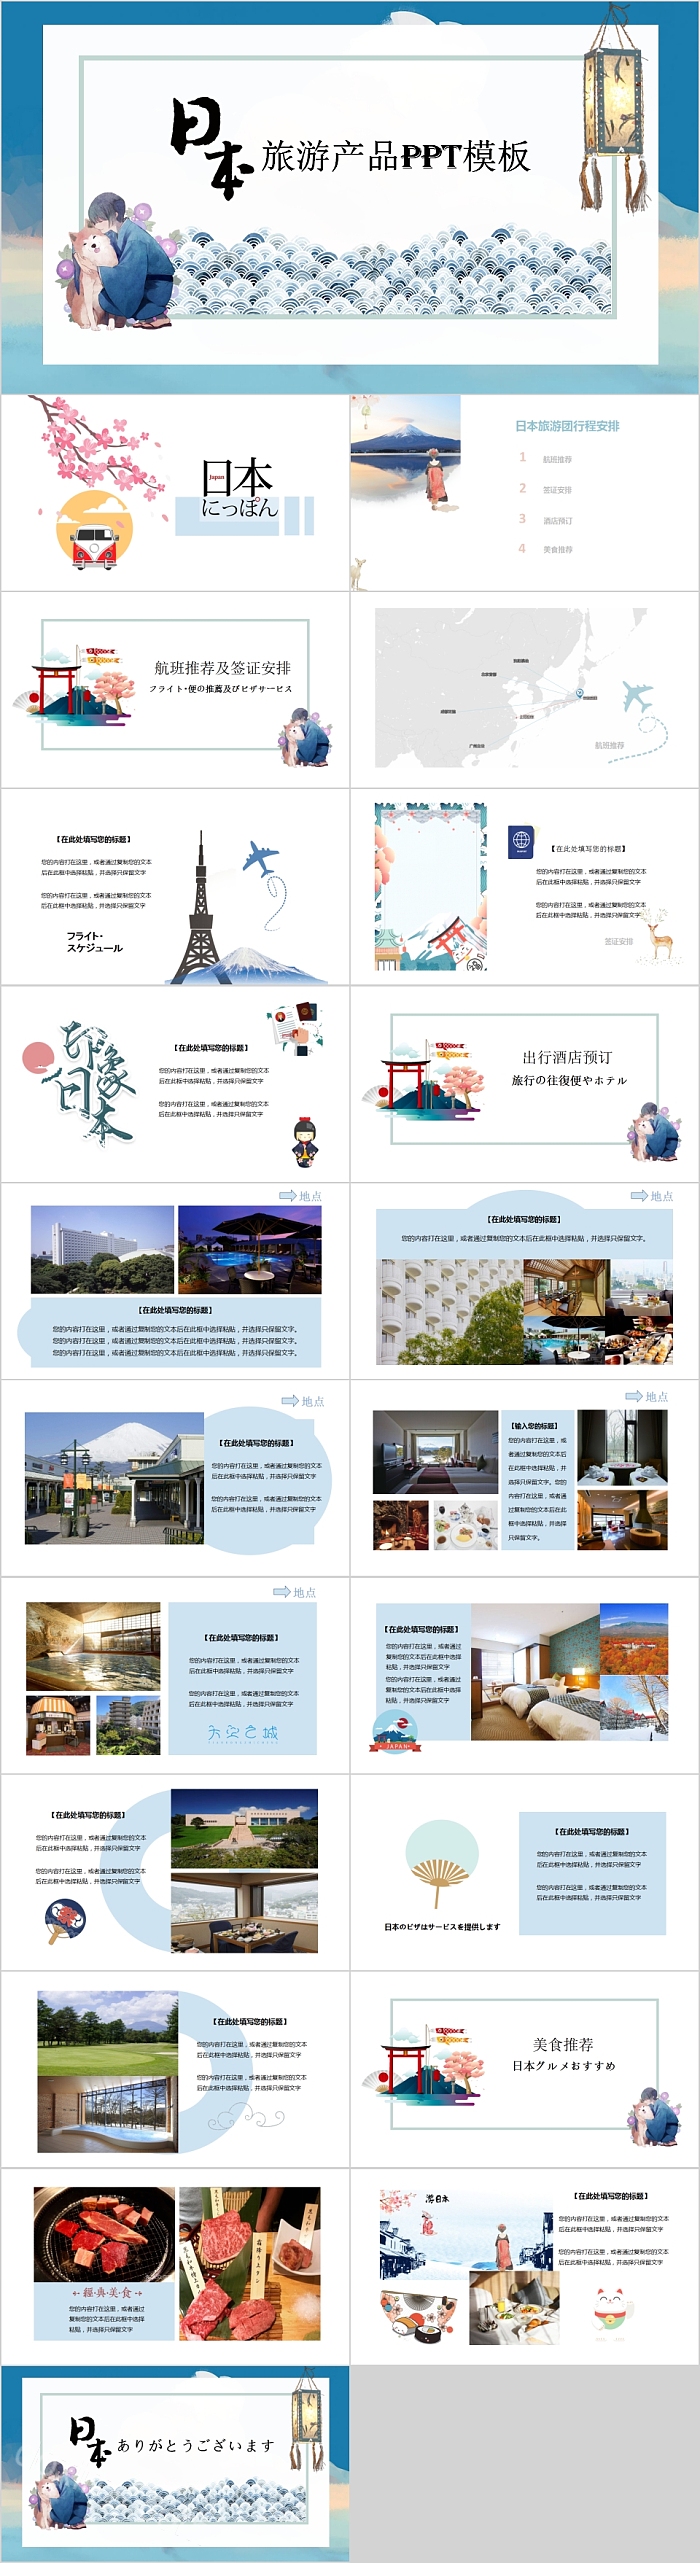 日本印象旅游产品PPT模板